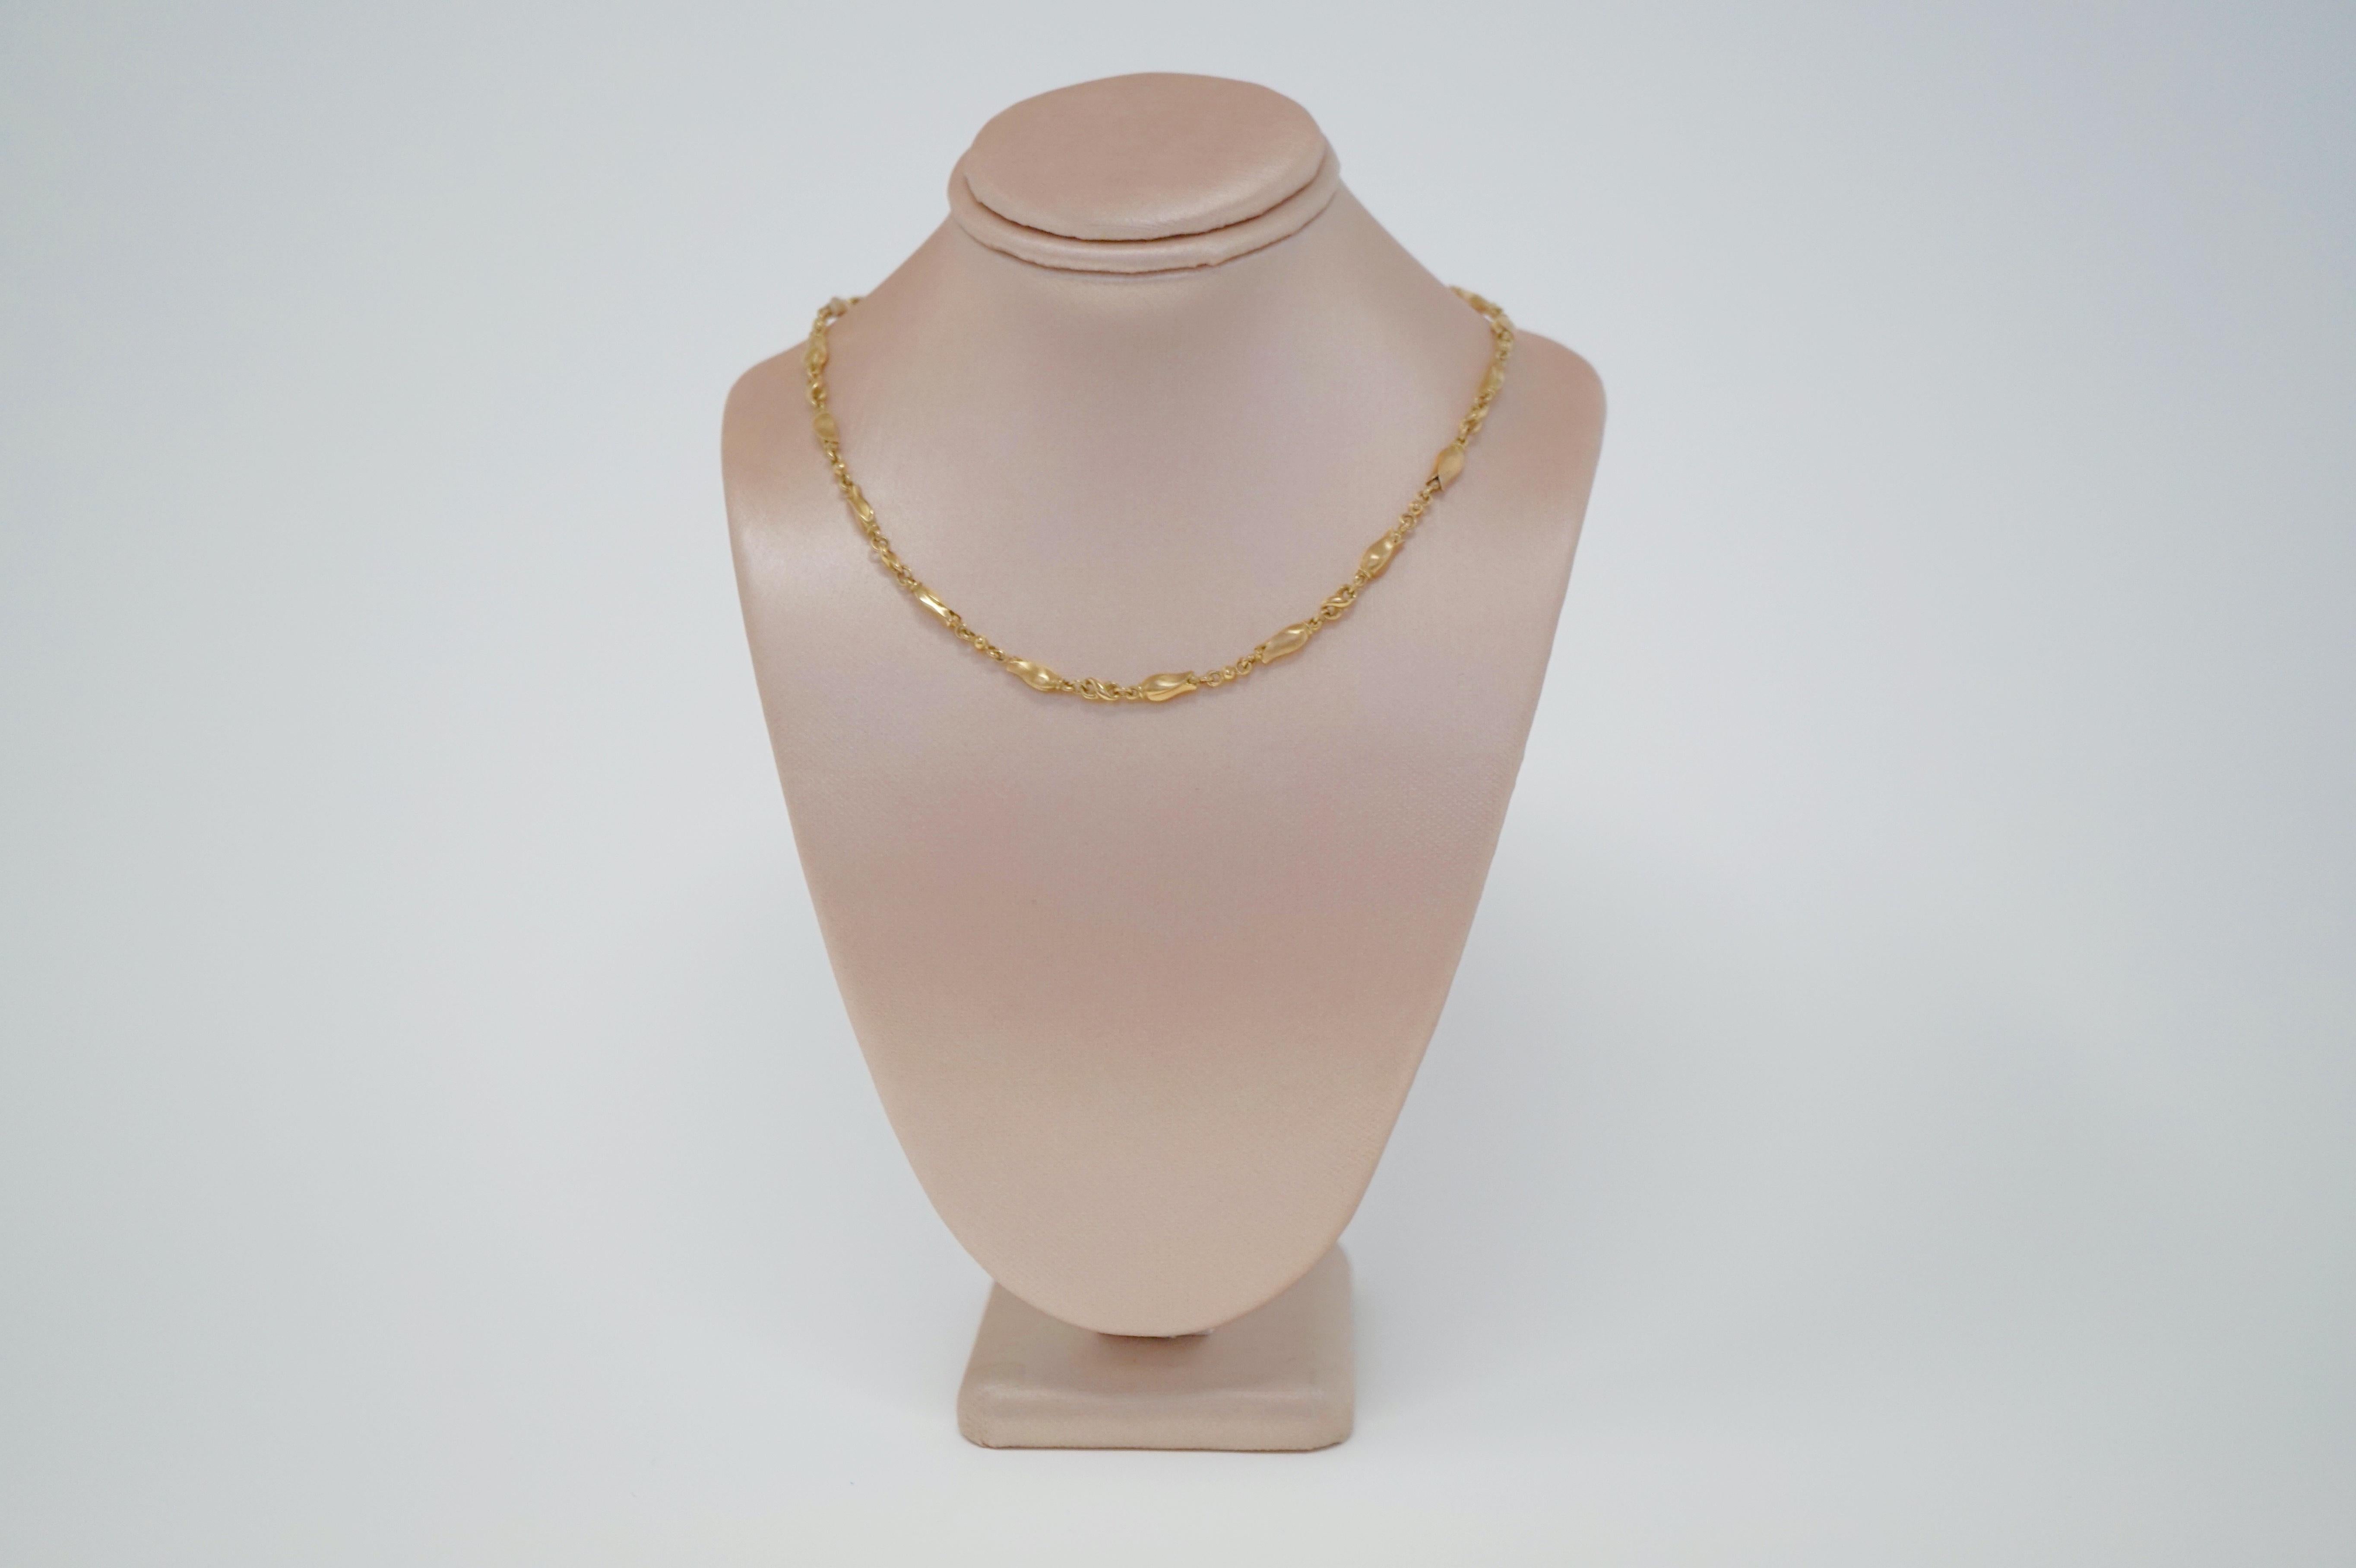 Georg Jensen 18 Karat Gold Necklace and Bracelet Set, Signed 2